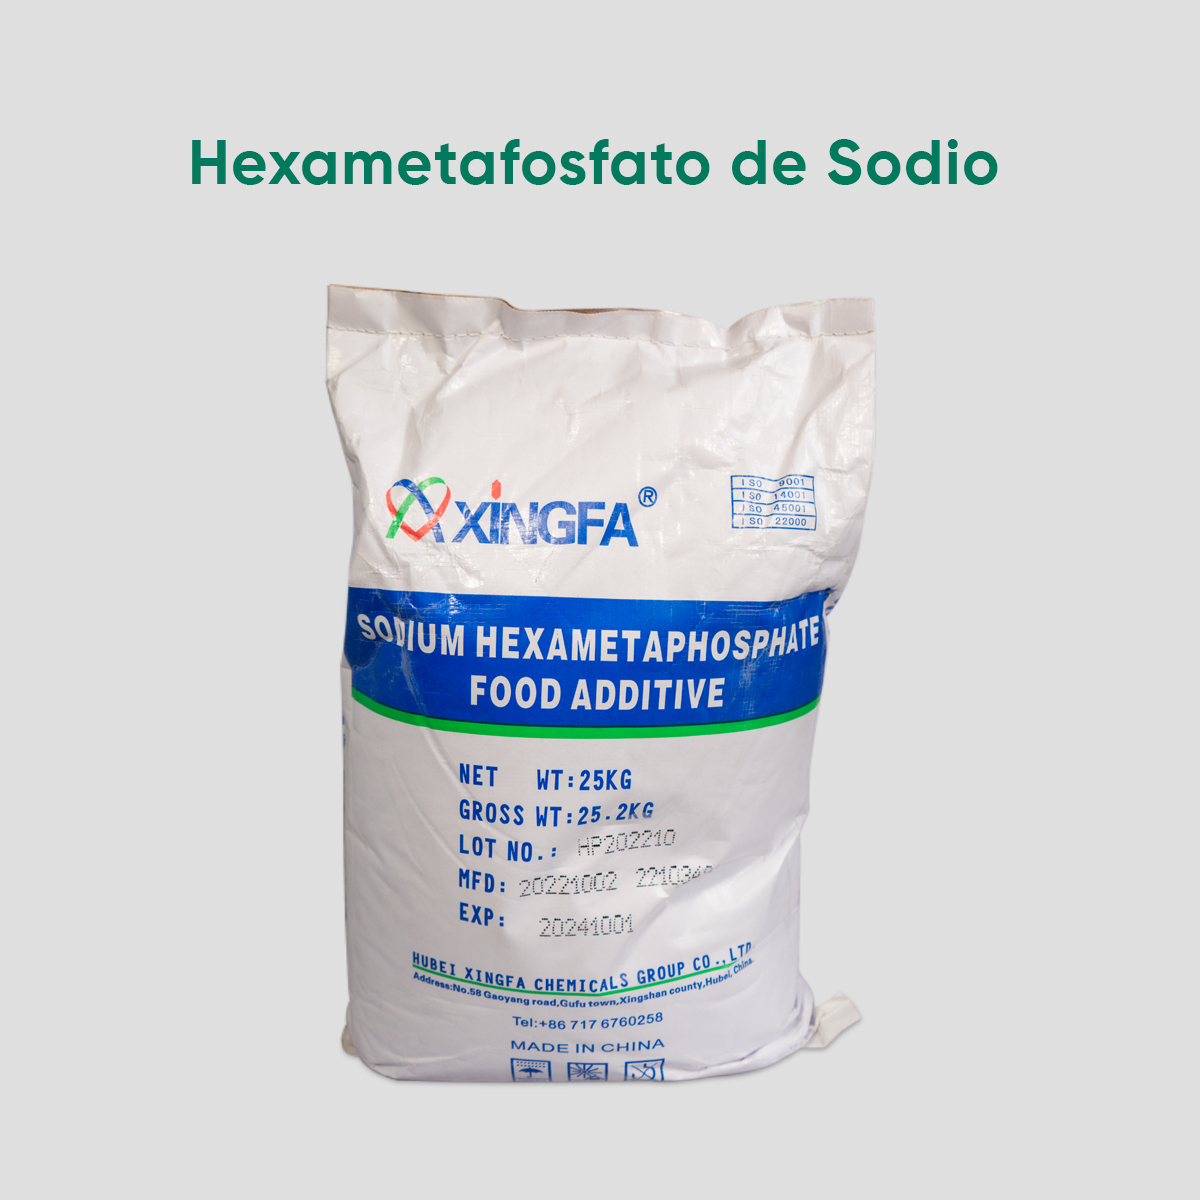 35.-HEXAMETAFOSFATO-DE-SODIO-DSC09989